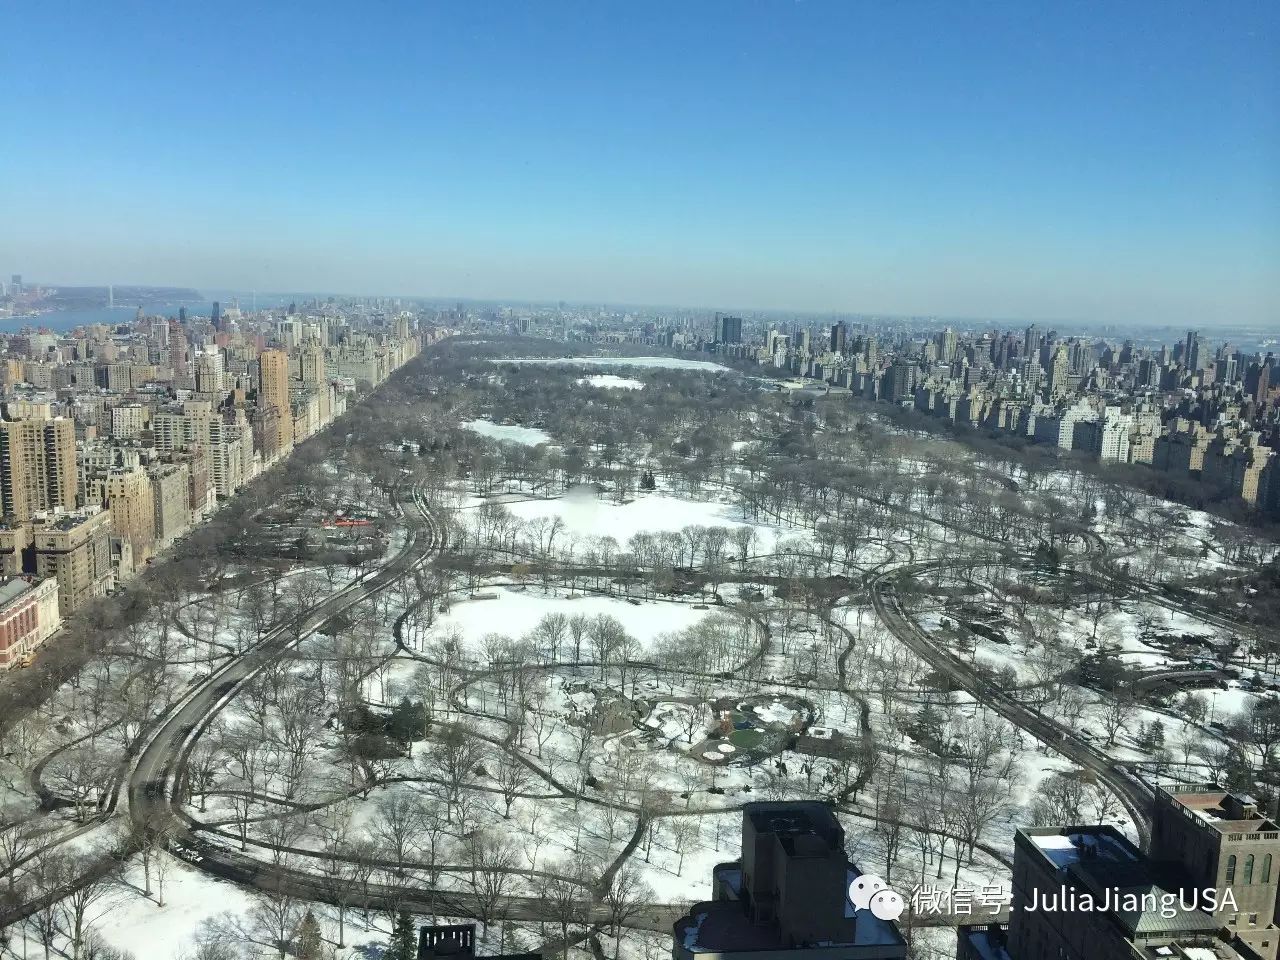 傲视群雄 无与伦比 纽约曼哈顿中央公园 220 Central Park South 即将出现全球最贵公寓